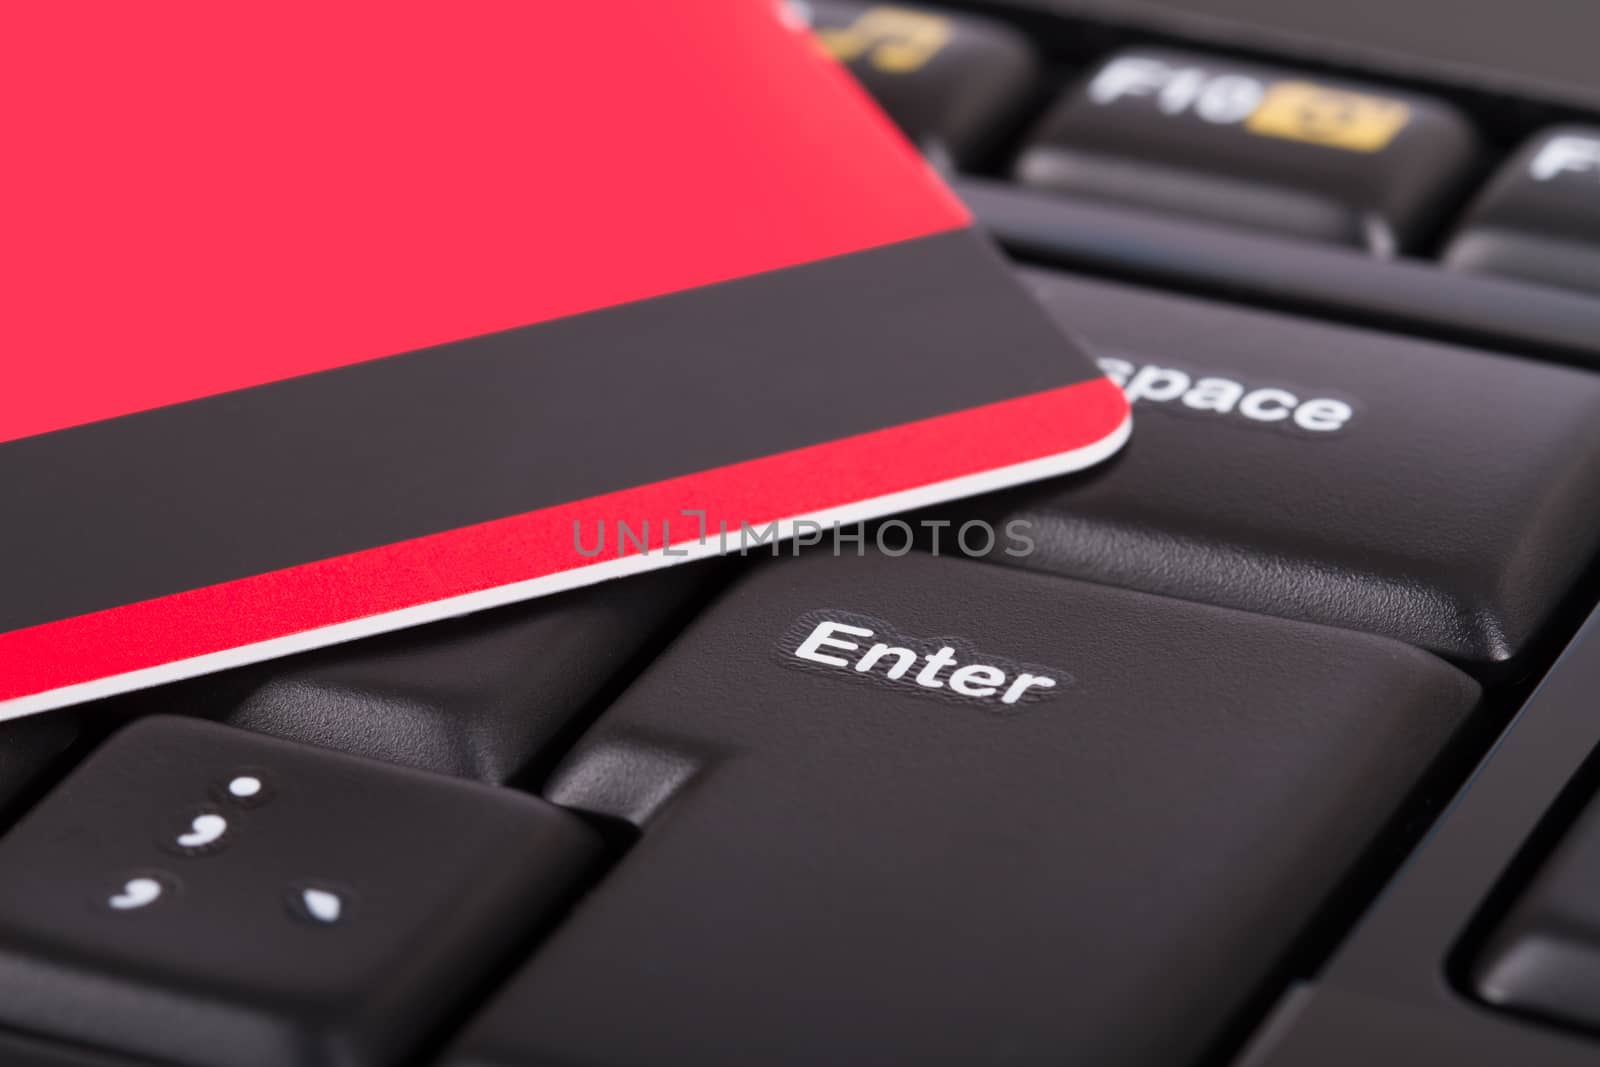 Credit Card on Keyboard by niglaynike